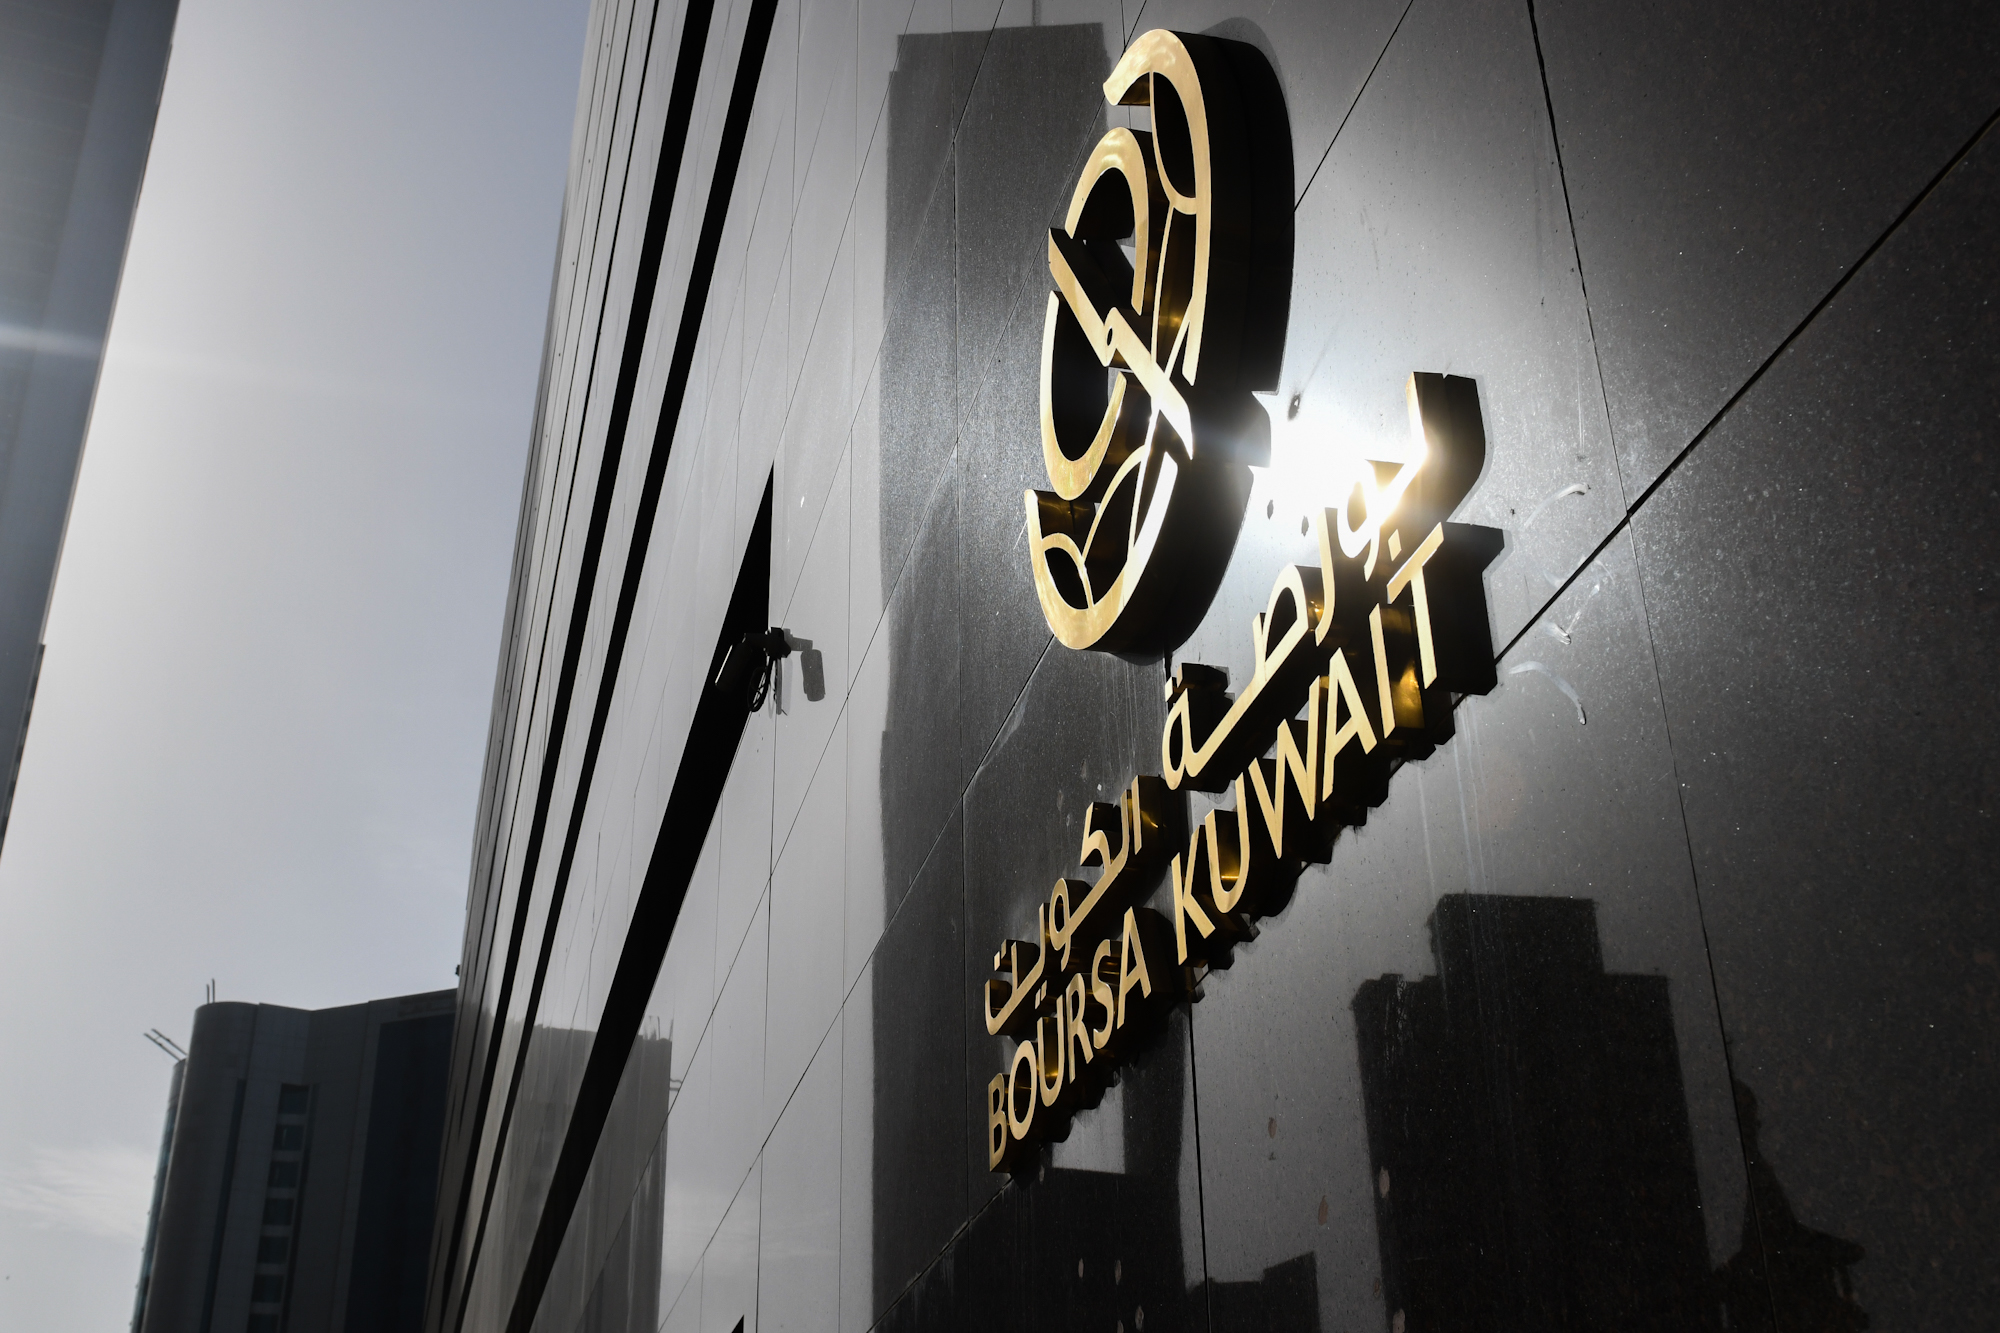 بورصة الكويت تغلق تعاملاتها على ارتفاع مؤشرها العام 2ر42 نقطة ليبلغ 02ر7126 بنسبة 60ر0 بالمئة                                                                                                                                                             